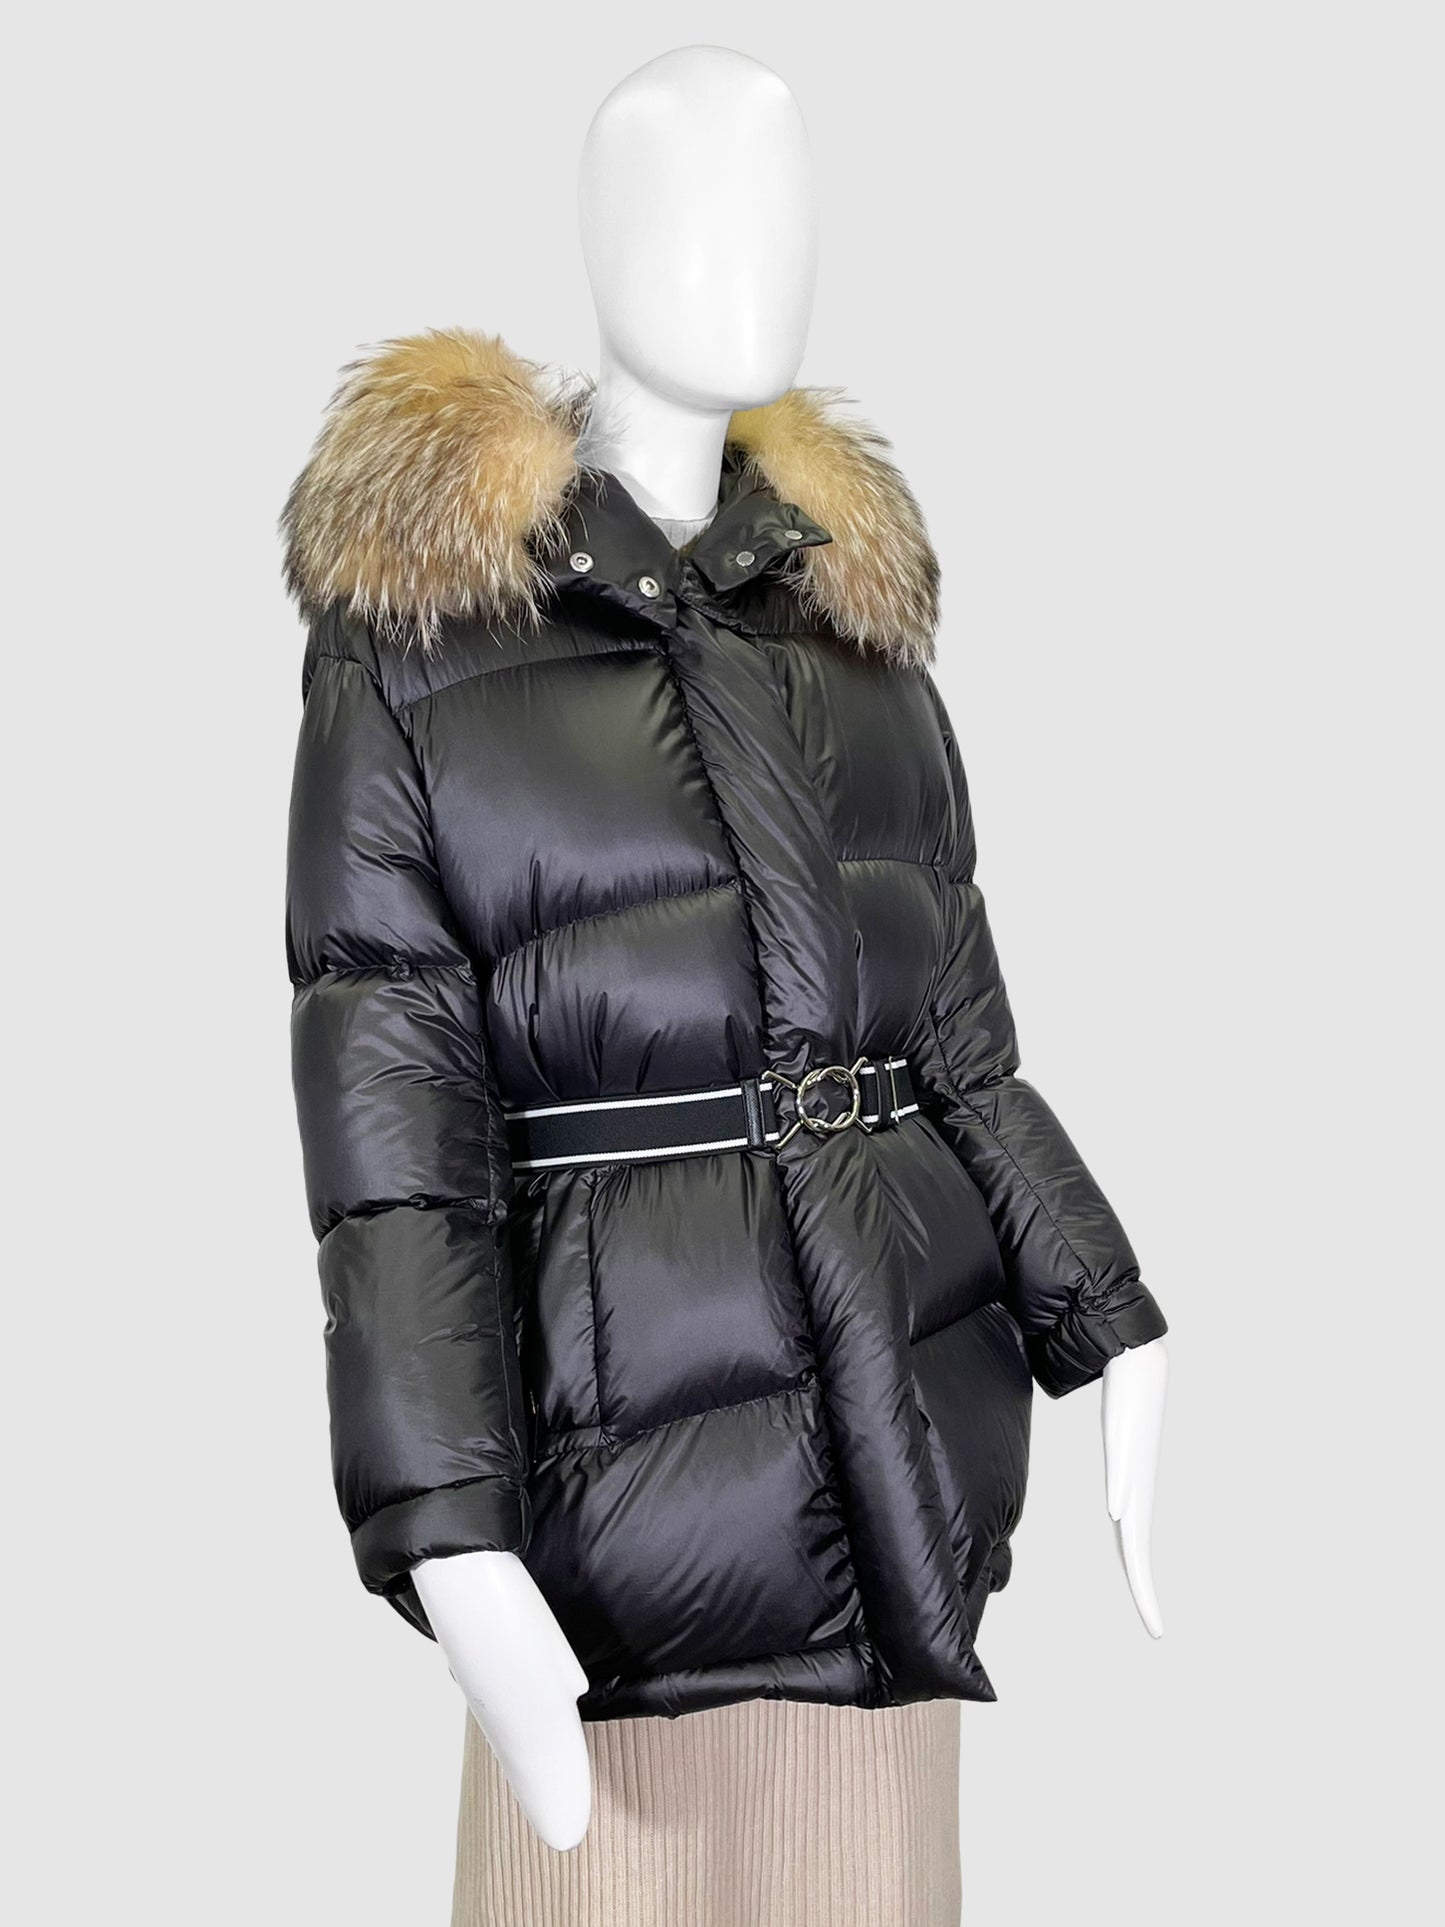 Prada Down Coat with Fur Trim - Size 36